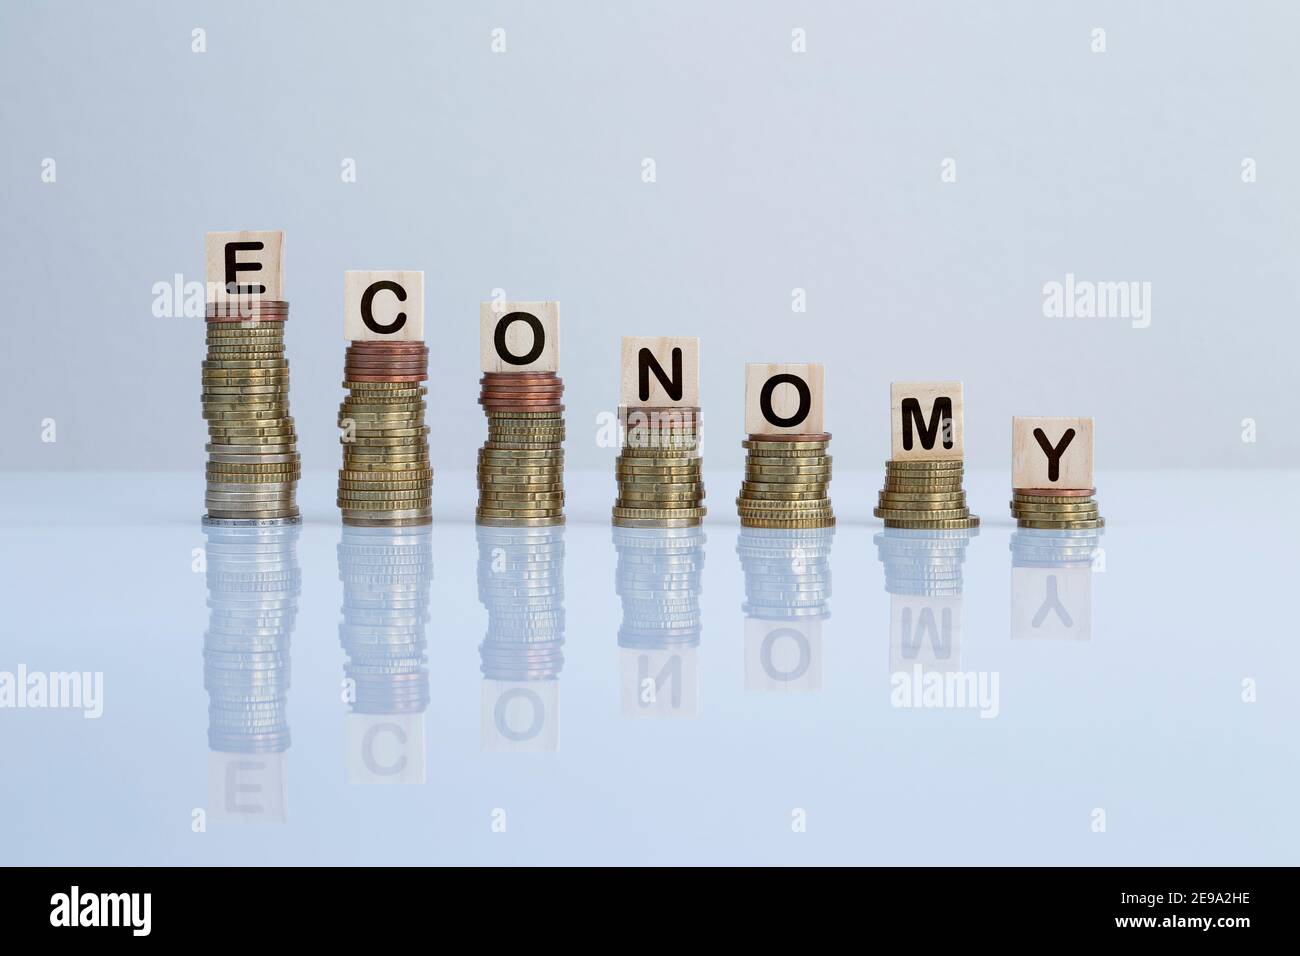 Parola 'ECONOMIA' su blocchi di legno in cima a pile discendenti di monete. Foto concettuale di crisi economica, recessione, riduzione finanziaria e fallimento. Foto Stock